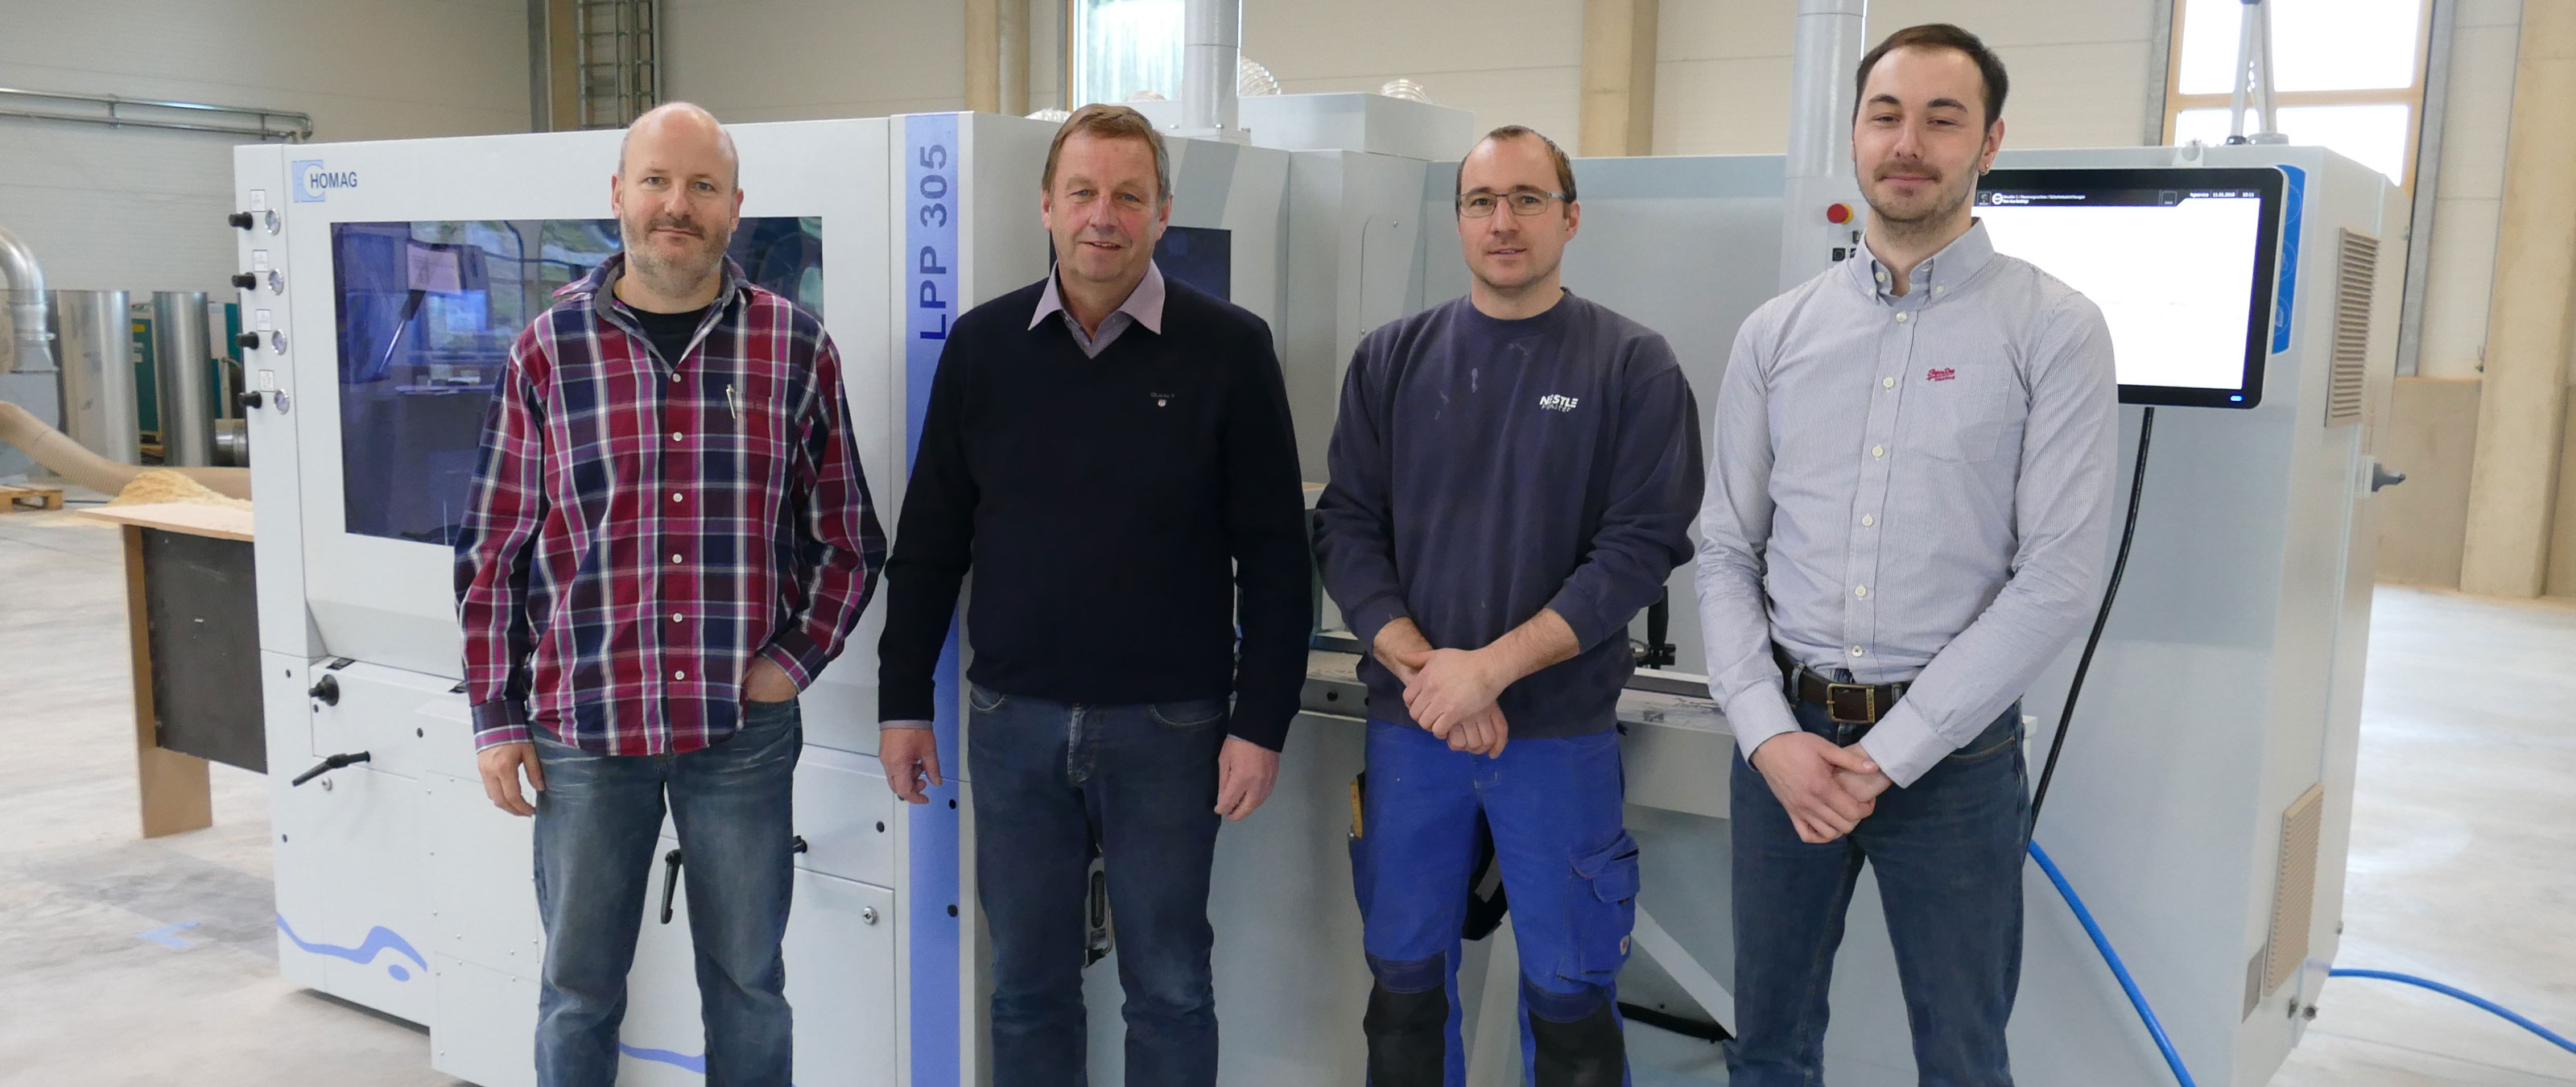 Od lewej do prawej: Volker Pfefferle (kierownik koordynacji pracy w zakresie okien drewnianych i drewniano-aluminiowych), prezes Jürgen Nestle, Carsten Rosner (kierownik produkcji działu drewno), Johannes Lang (dyrektor ds. produktu w zakresie strugarek)